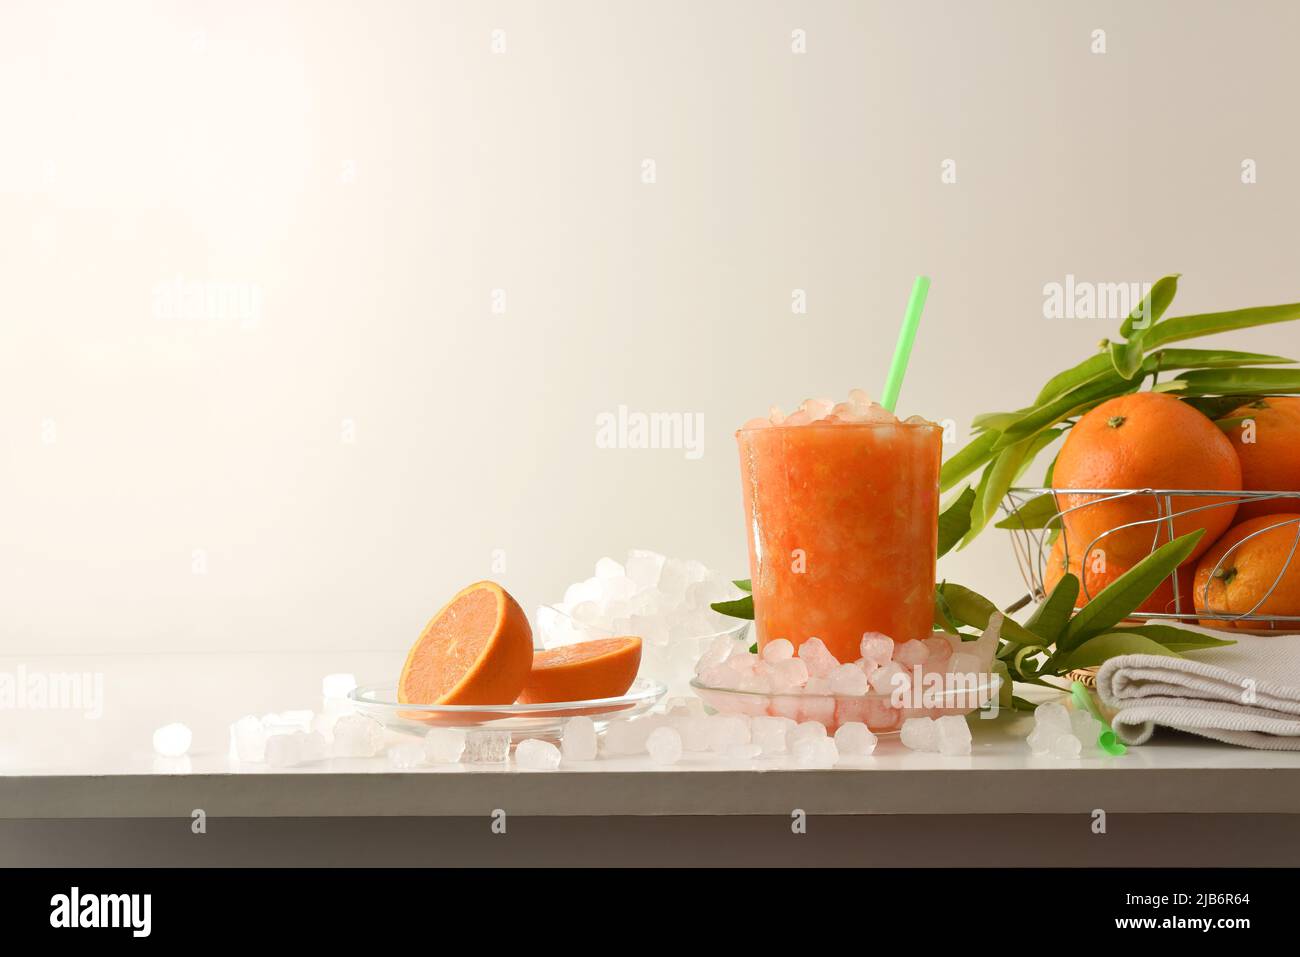 Détail de la boisson d'orange avec beaucoup de glace sur une table blanche avec des fruits et un bol avec de la glace autour et un fond isolé. Vue avant. COM. Horizontale Banque D'Images